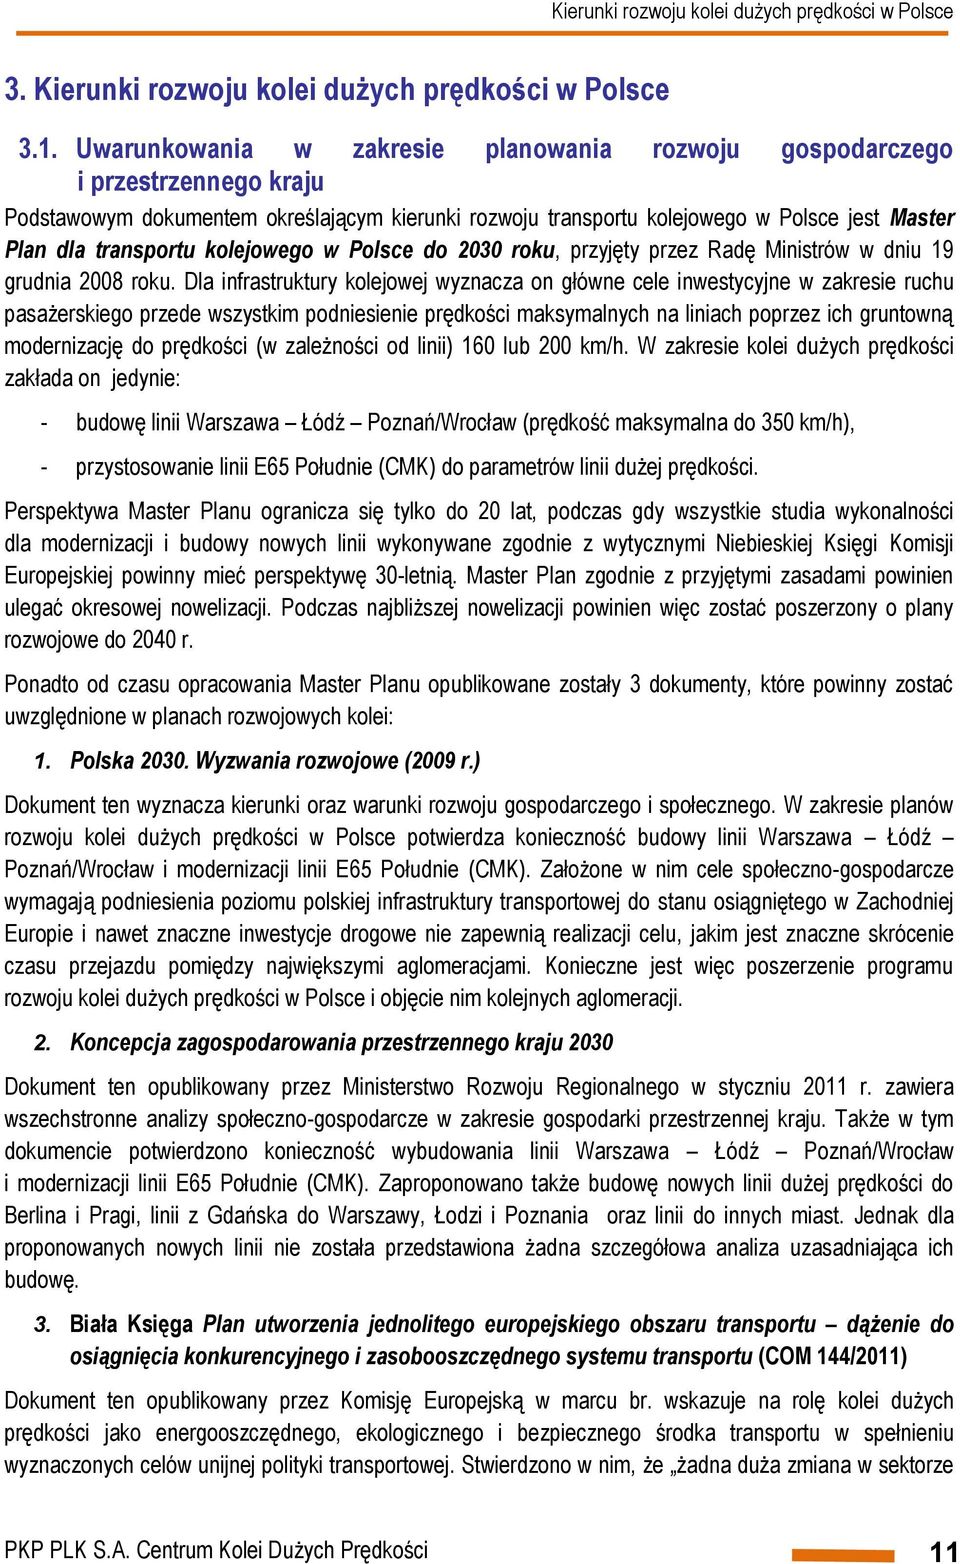 kolejowego w Polsce do 2030 roku, przyjęty przez Radę Ministrów w dniu 19 grudnia 2008 roku.